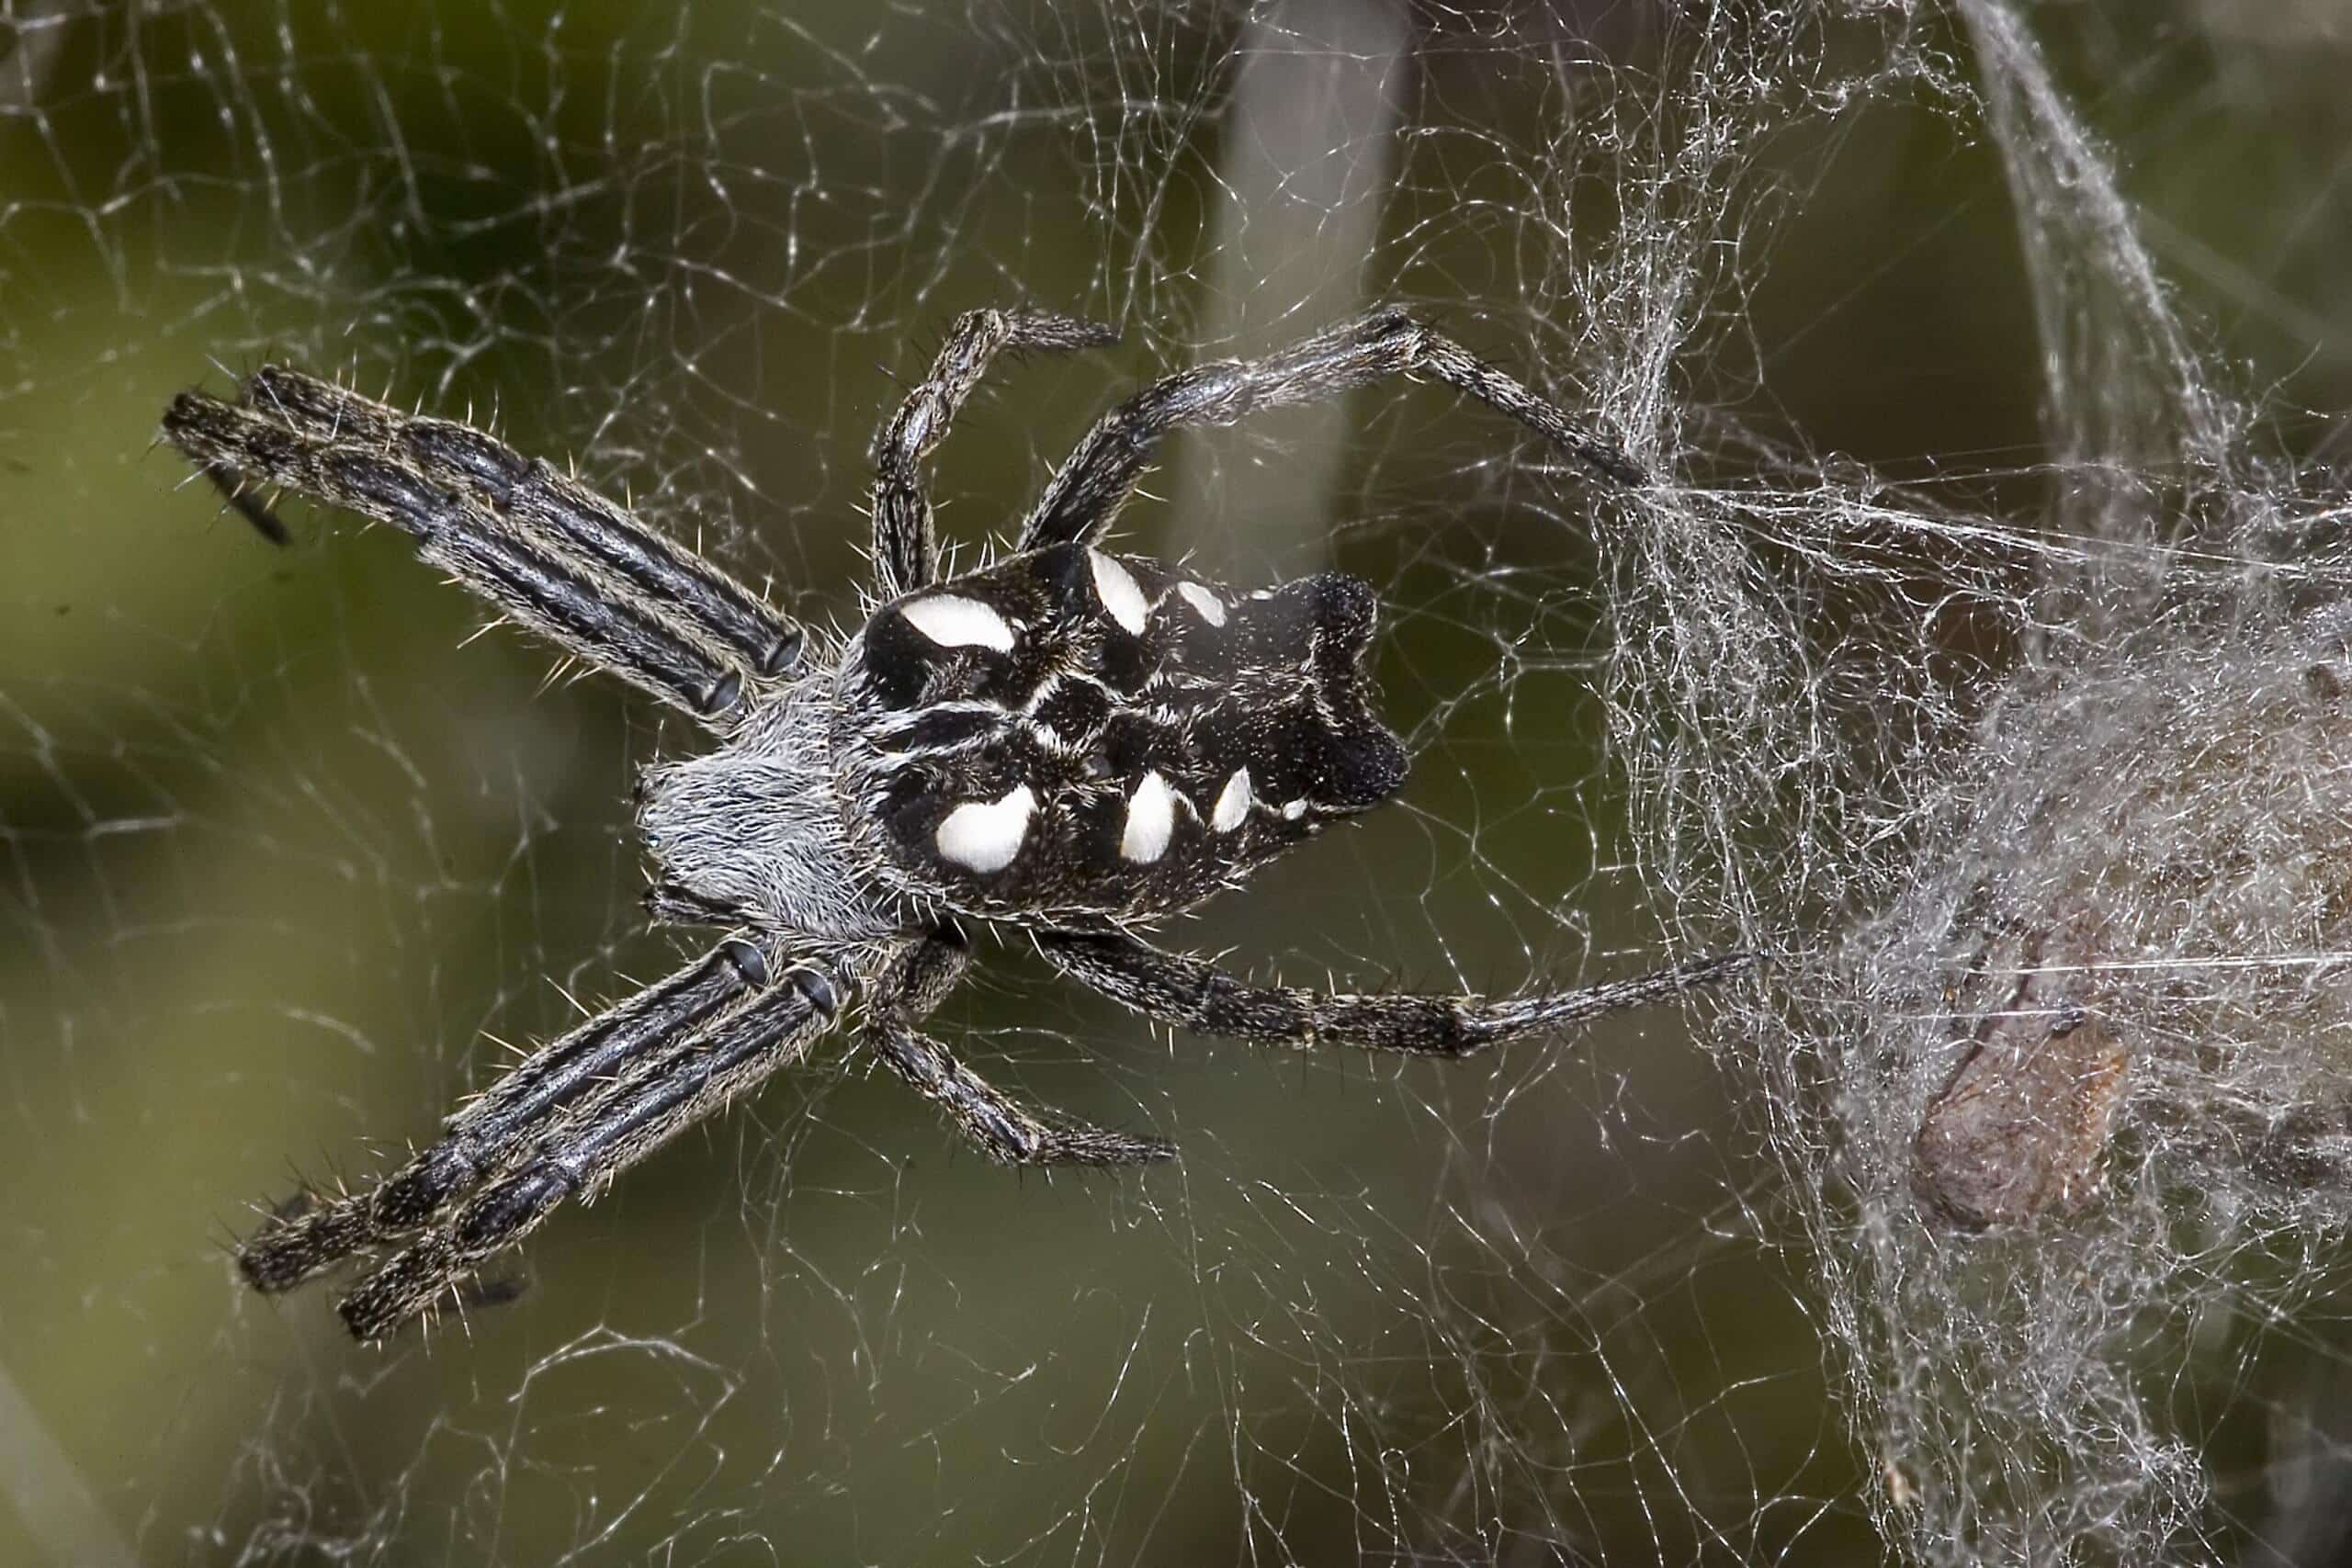 העכבישים הללו חיים ב"קומונות" שבעזרתן הם מייצרים רשתות קורים גדולות – שלוכדות את המזיקים השונים. צילום: Olaf Leillinger, CC BY-SA 2.5